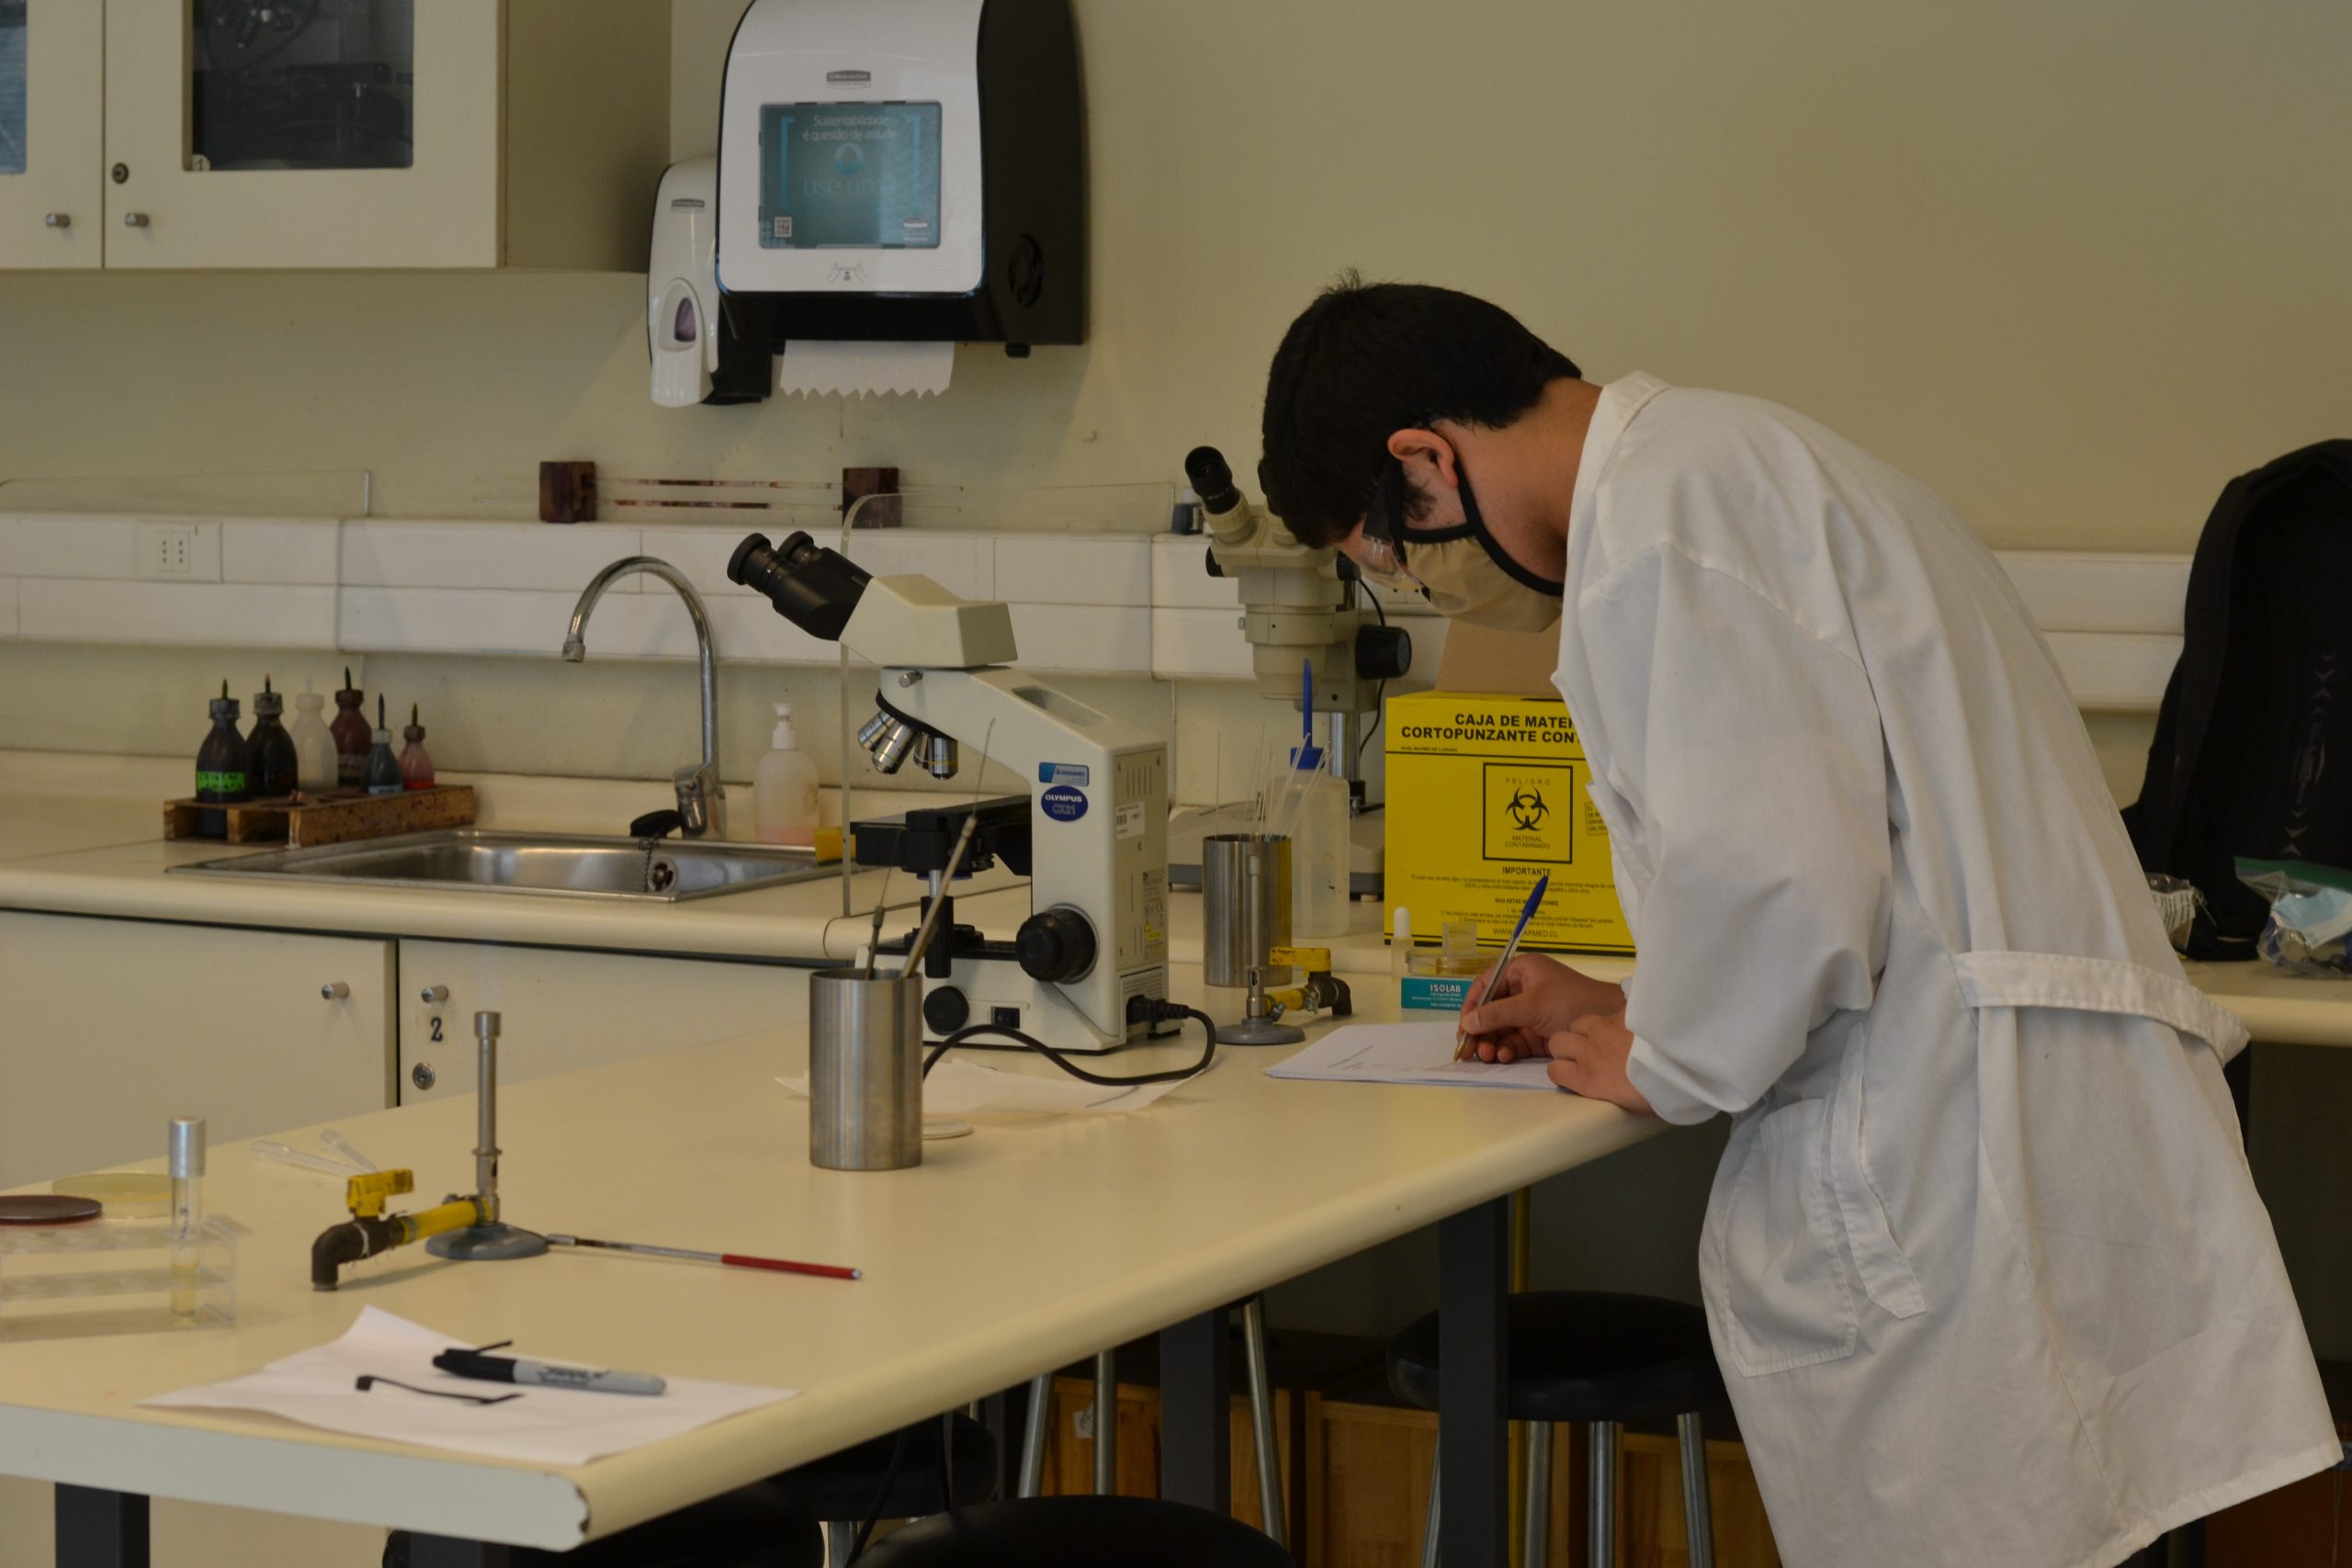 Apertura de laboratorio: ¿Qué requisitos son necesario?